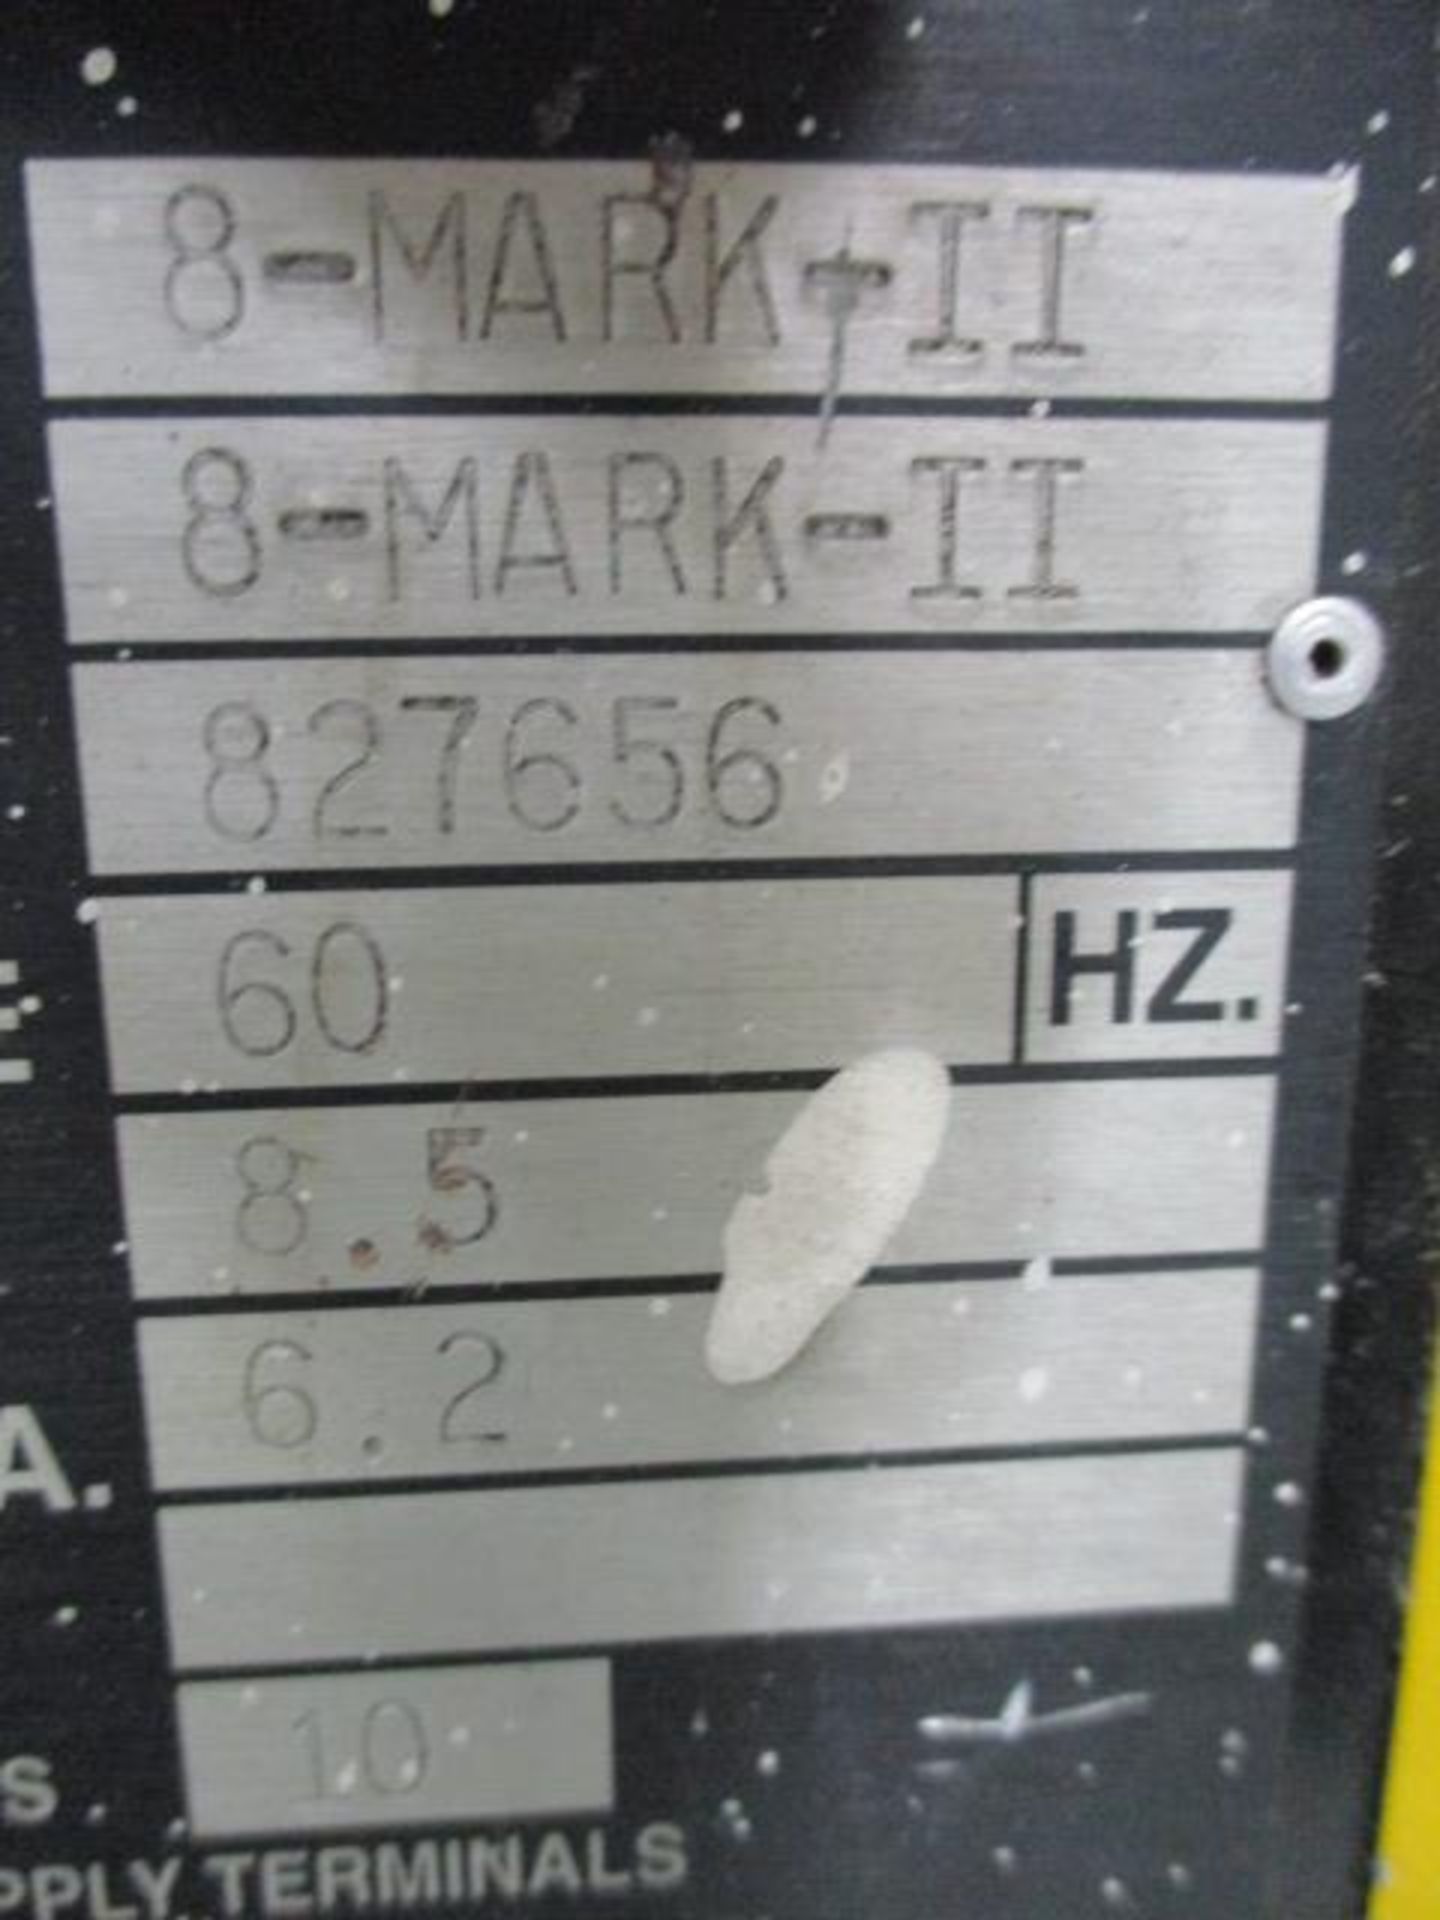 Marvel Series 8-Mark-II Tilt-Frame Vertical Bandsaw with Manual Infeed / Tilt, Work Light, Vise, - Image 7 of 7